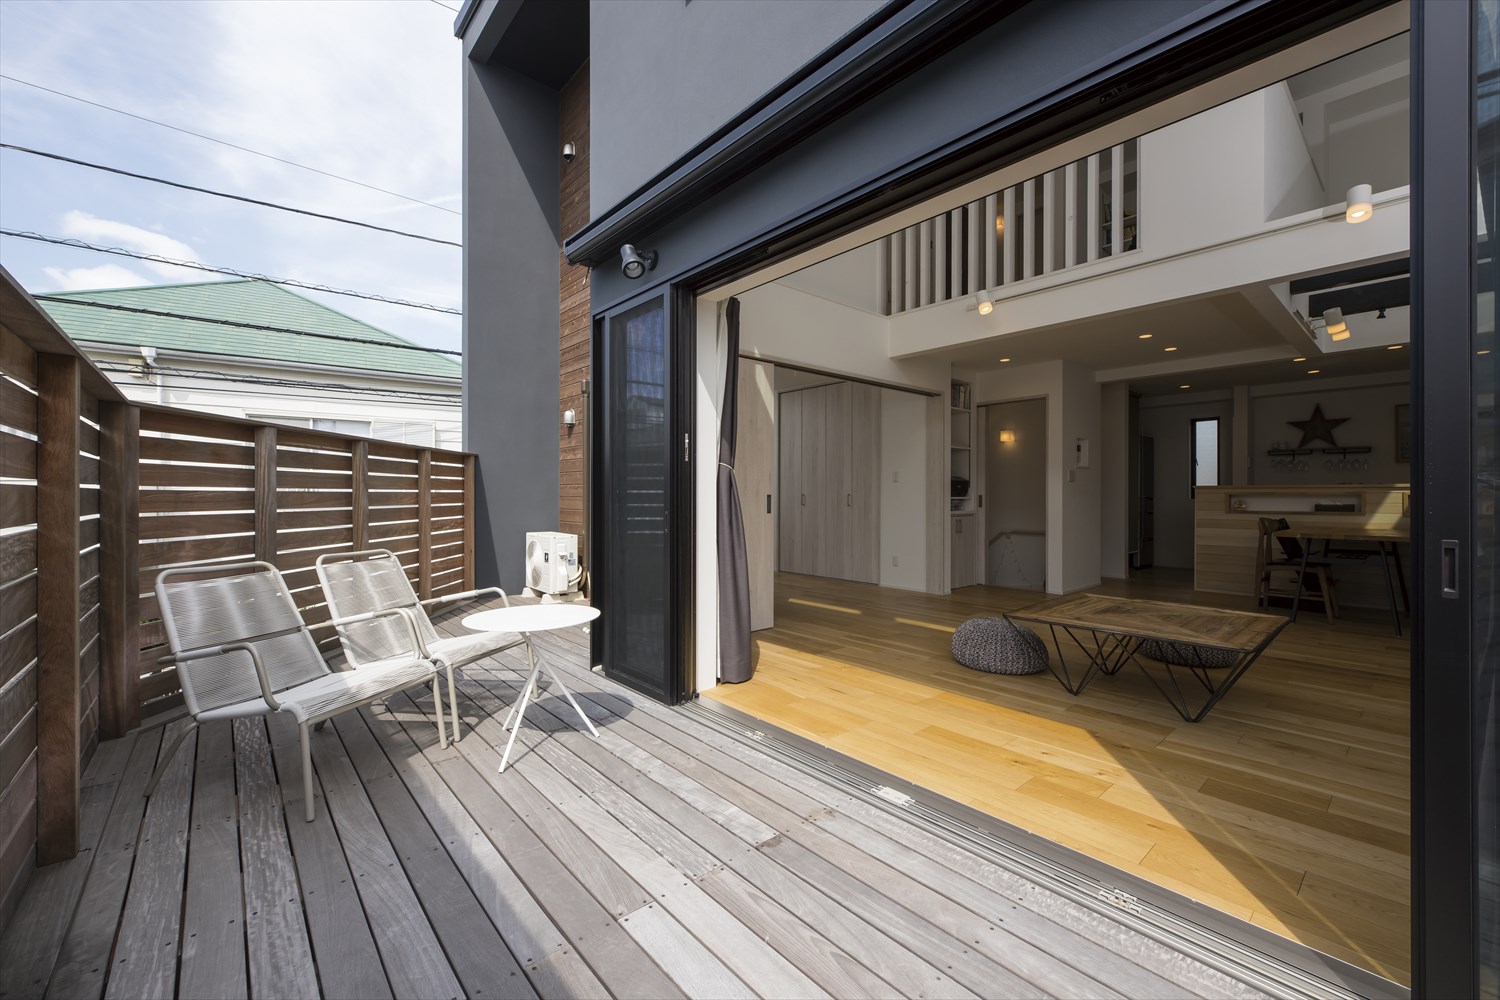 ベランダとバルコニー テラス デッキの違いとは 神奈川で注文住宅ならホームスタイリング